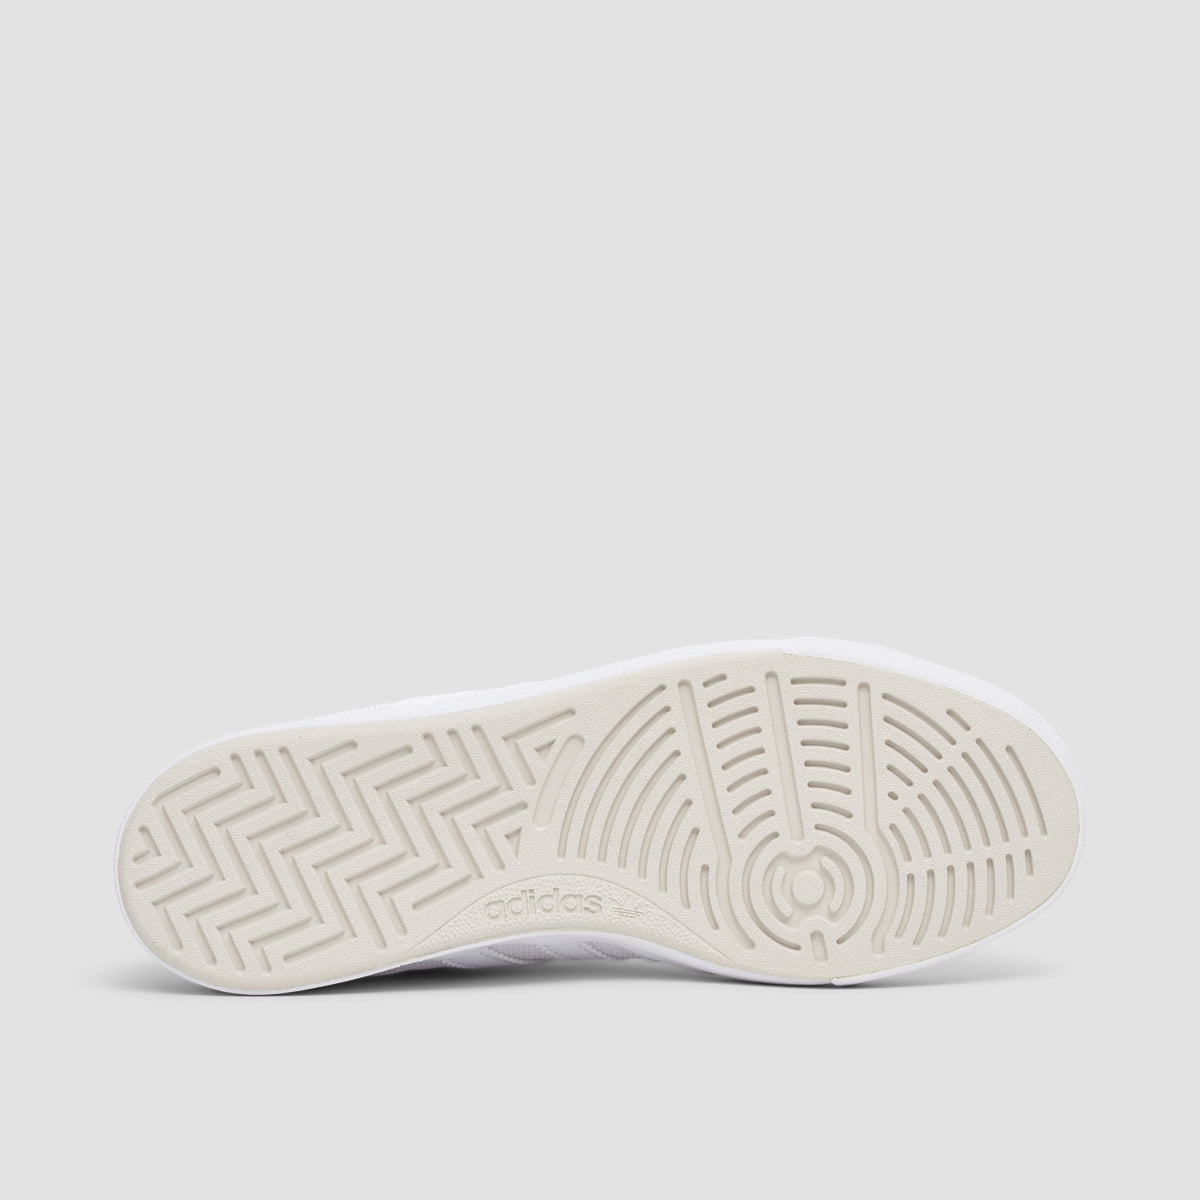 adidas Nora Shoes - Footwear White/Footwear White/Gold Metallic